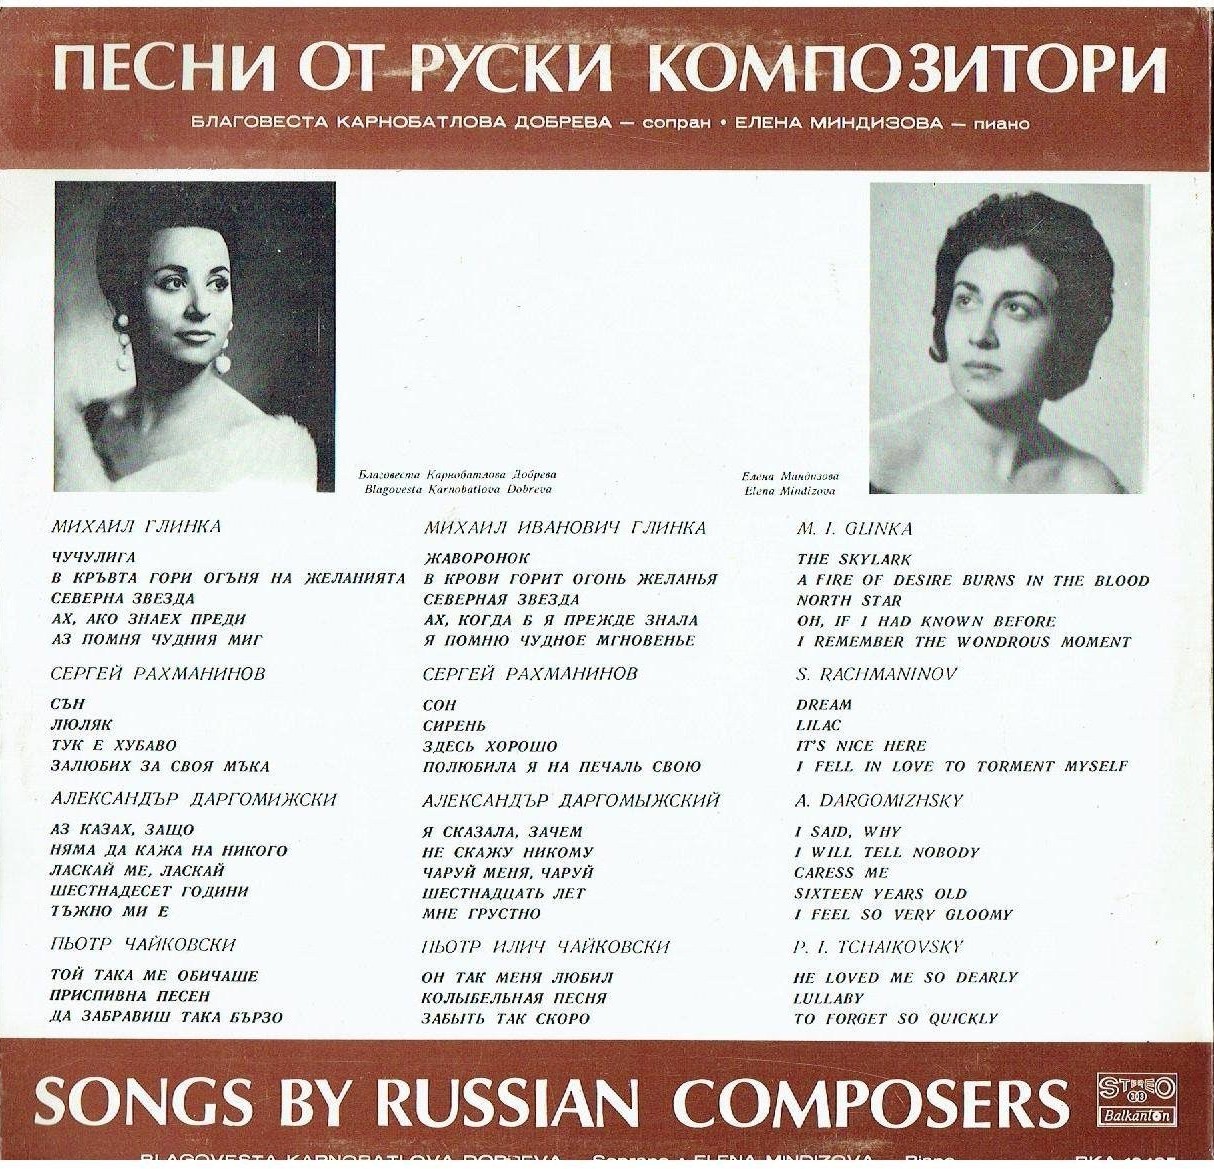 Благовеста Карнобатлова-Добрева. Песни от руски композитори. Съпровод на пиано Елена Миндизова